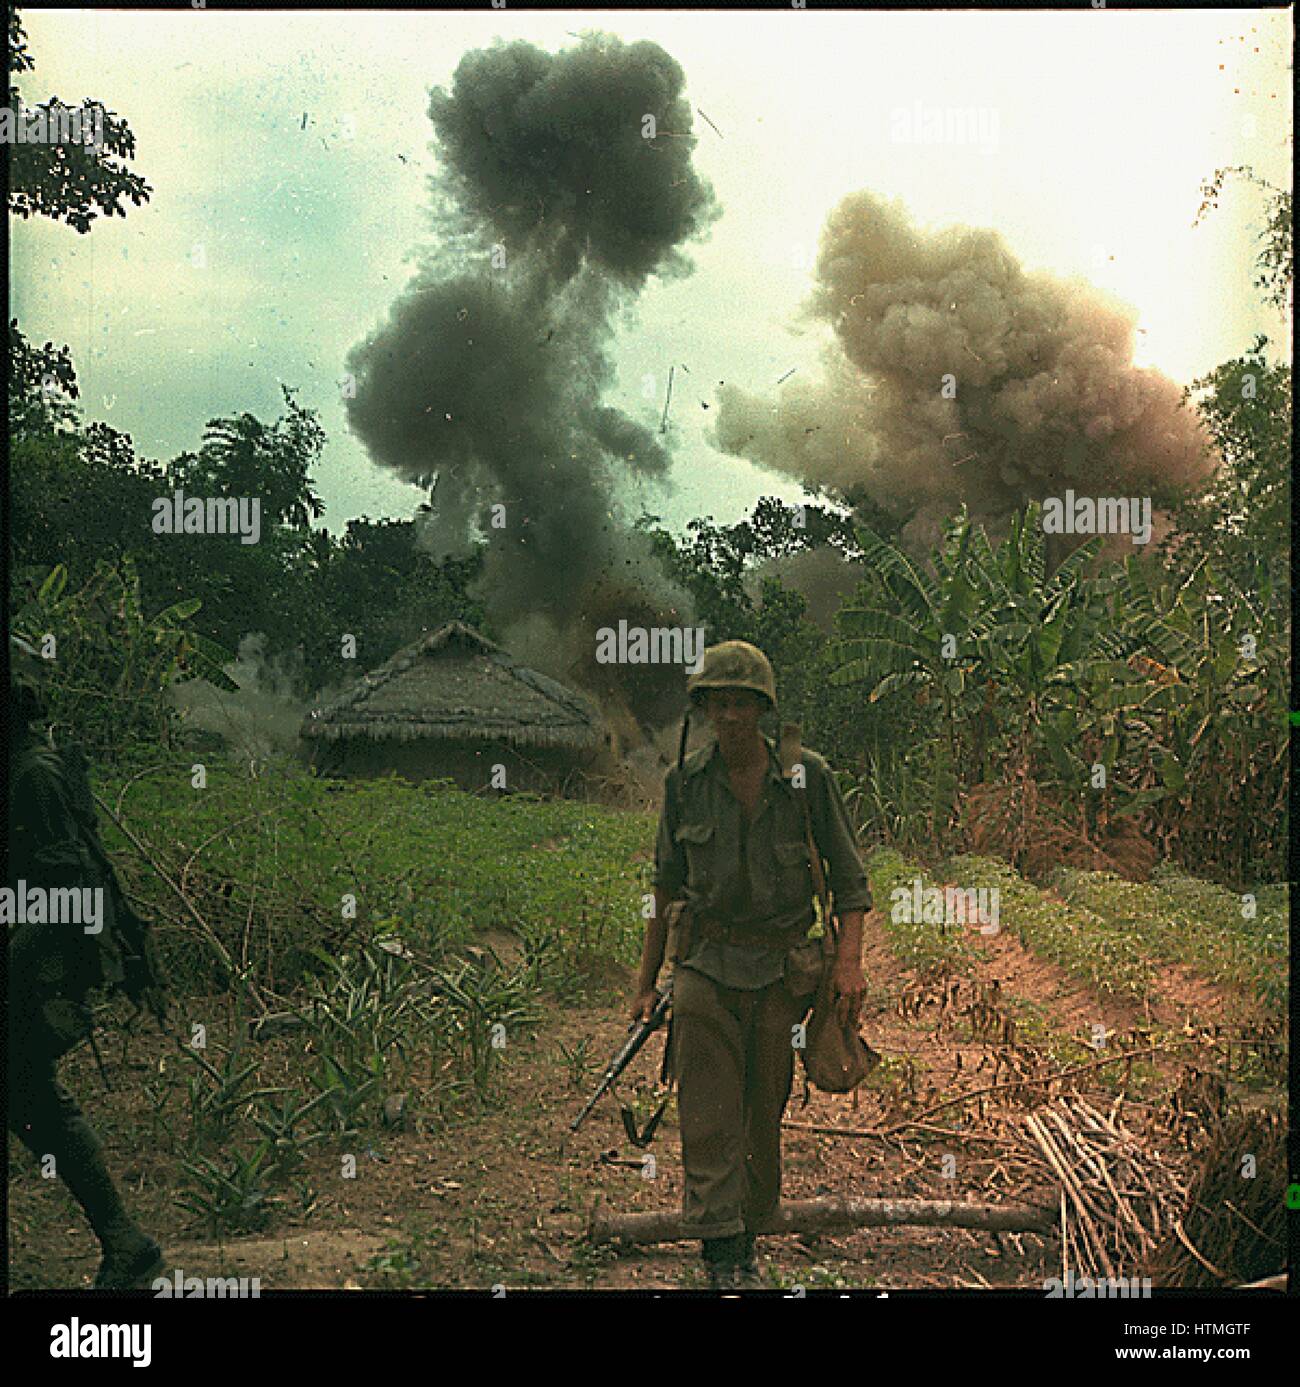 Betrieb-Georgien: US-Marines sprengen, Bunker und Tunnel von den Vietcong, 5. Mai 1966 verwendet. NARA-Foto. Stockfoto